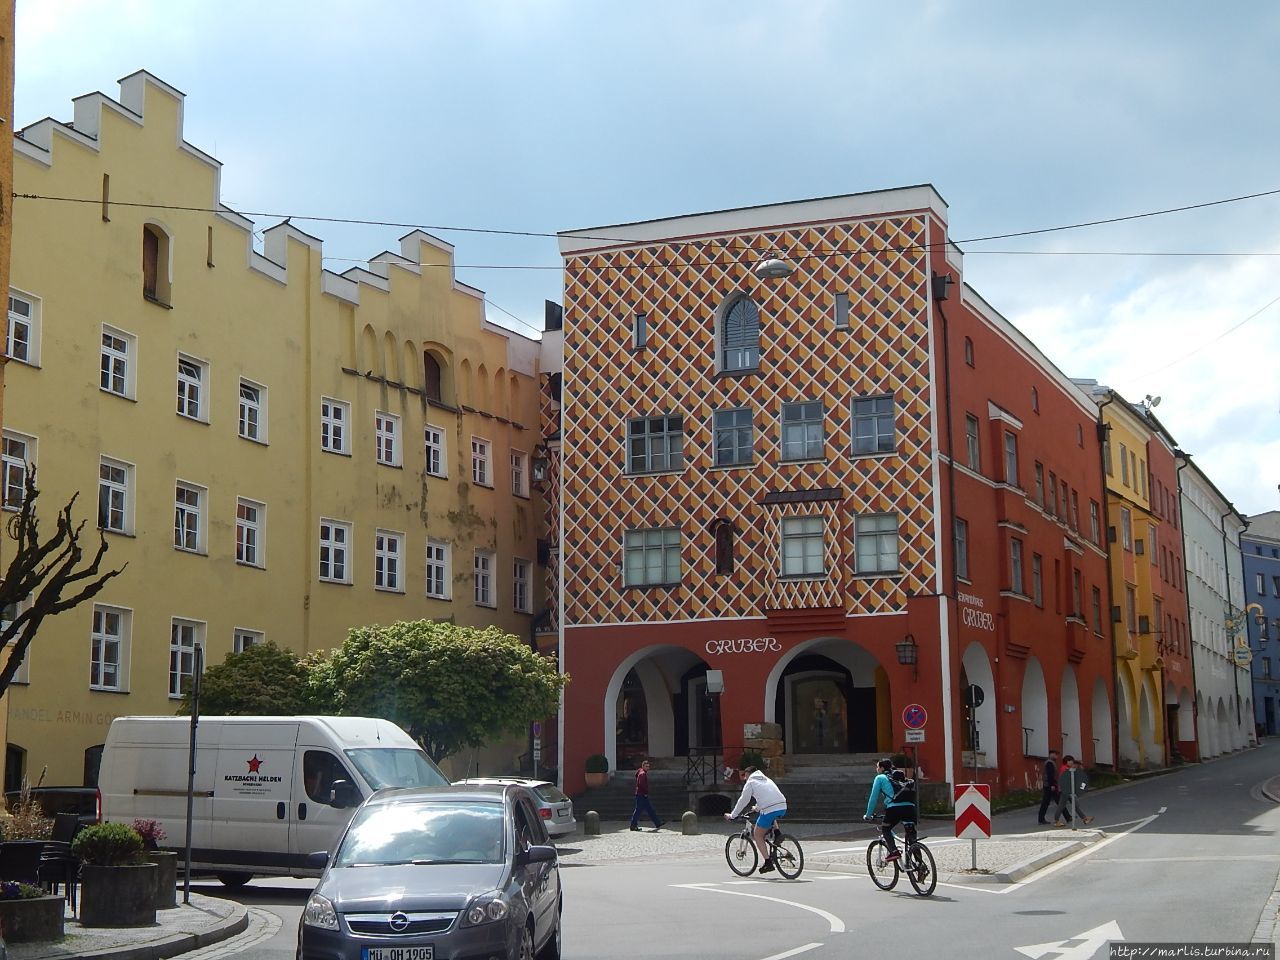 Желтые здания таможни, здание в ромбик — Сурауерхауз — пекарня 16 века, специализировавшаяся на Рождественских пряниках. Вид со стороны рыночной площади Марктплатц